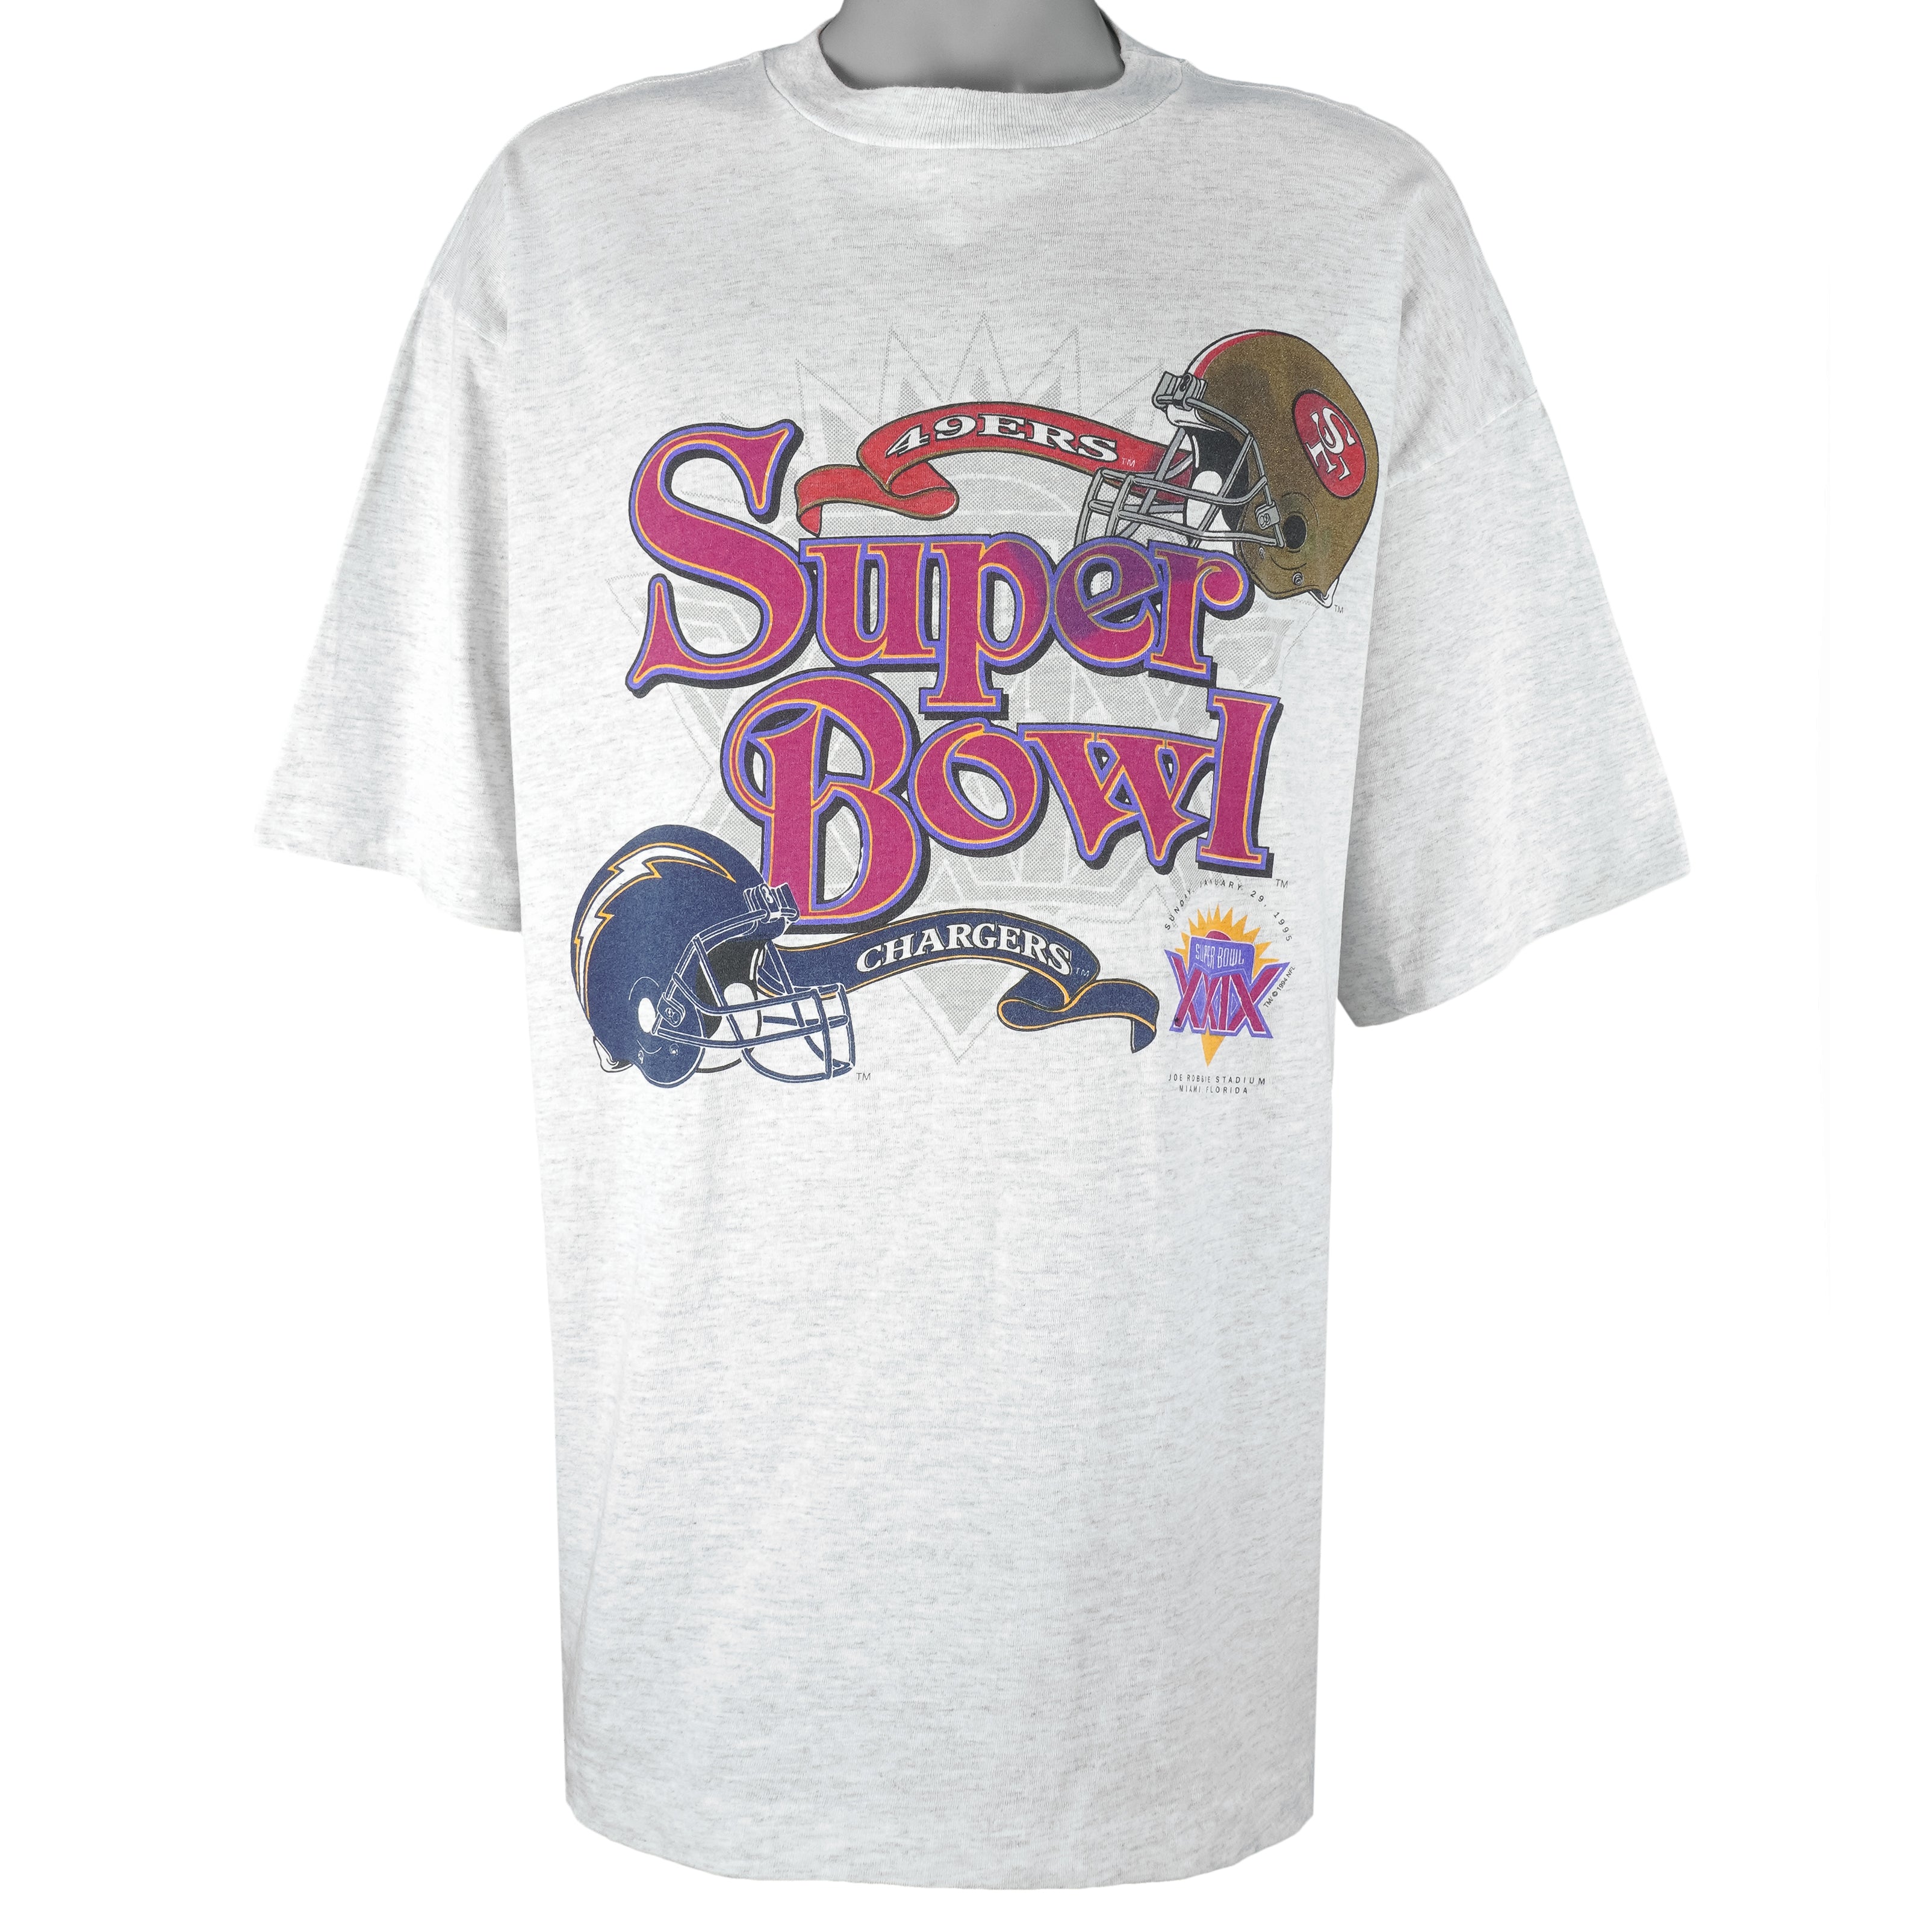 Vintage 1995 Chargers vs 49ers Super Bowl NFL Shirt Unisex